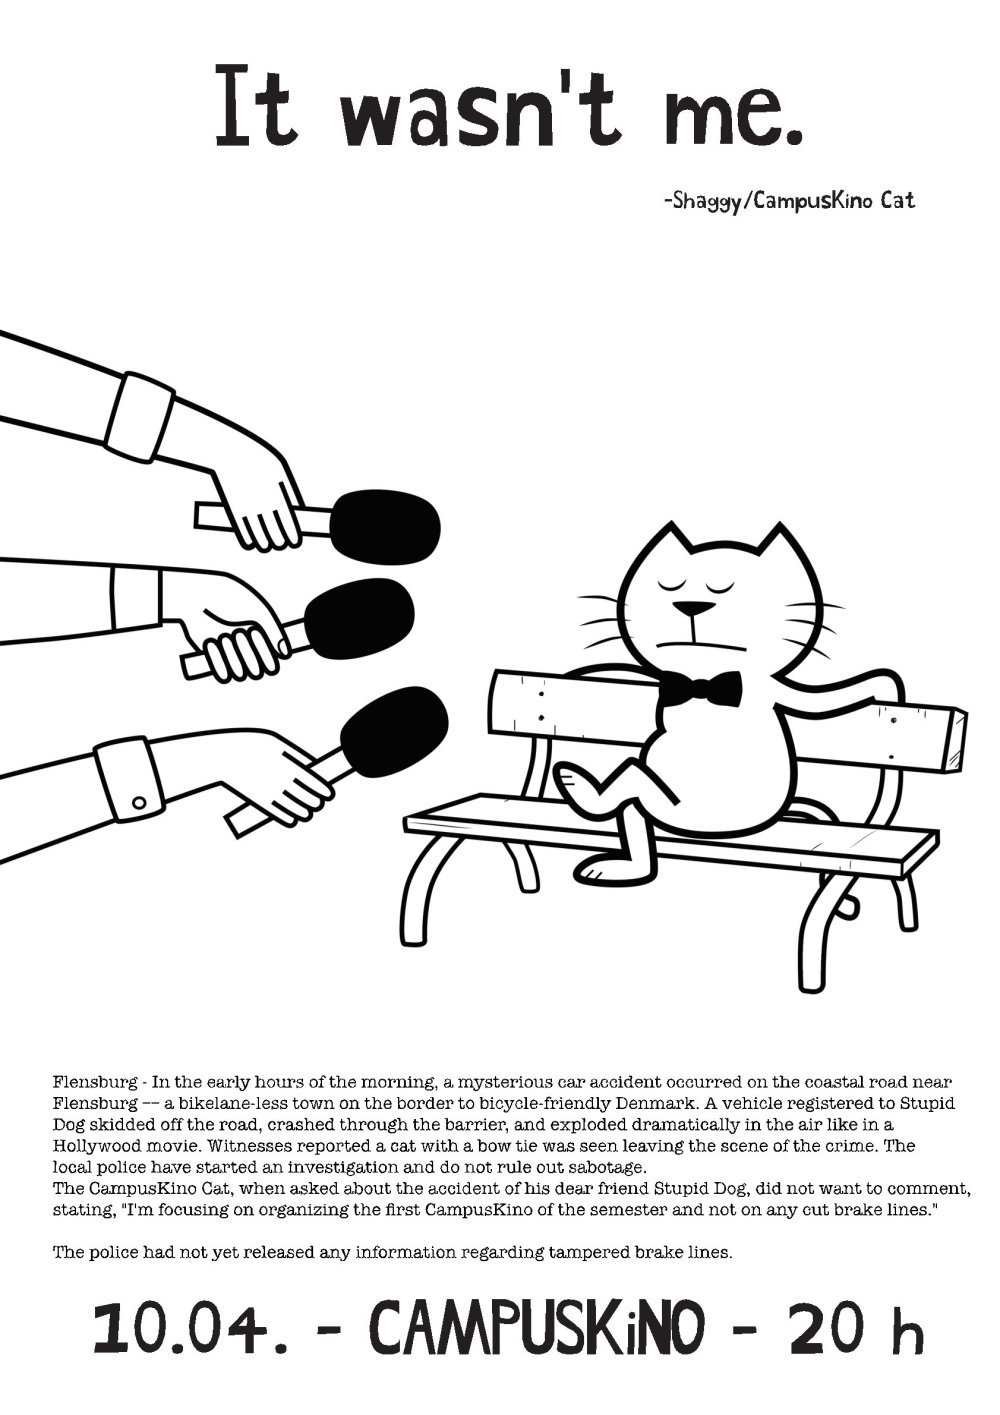 Ein weißes Plakat mit der Cartoon-Zeichnung einer Katze, die auf einer Bank sitzt und der drei Mikrofone ins Gesicht gehalten werden. Darüber die Überschrift "It wasn't me. - Shaggy/CampusKino Cat", darunter weiterer Text in kleinerer Schrift und wieder in groß: 10.04. - CampusKino - 20 h